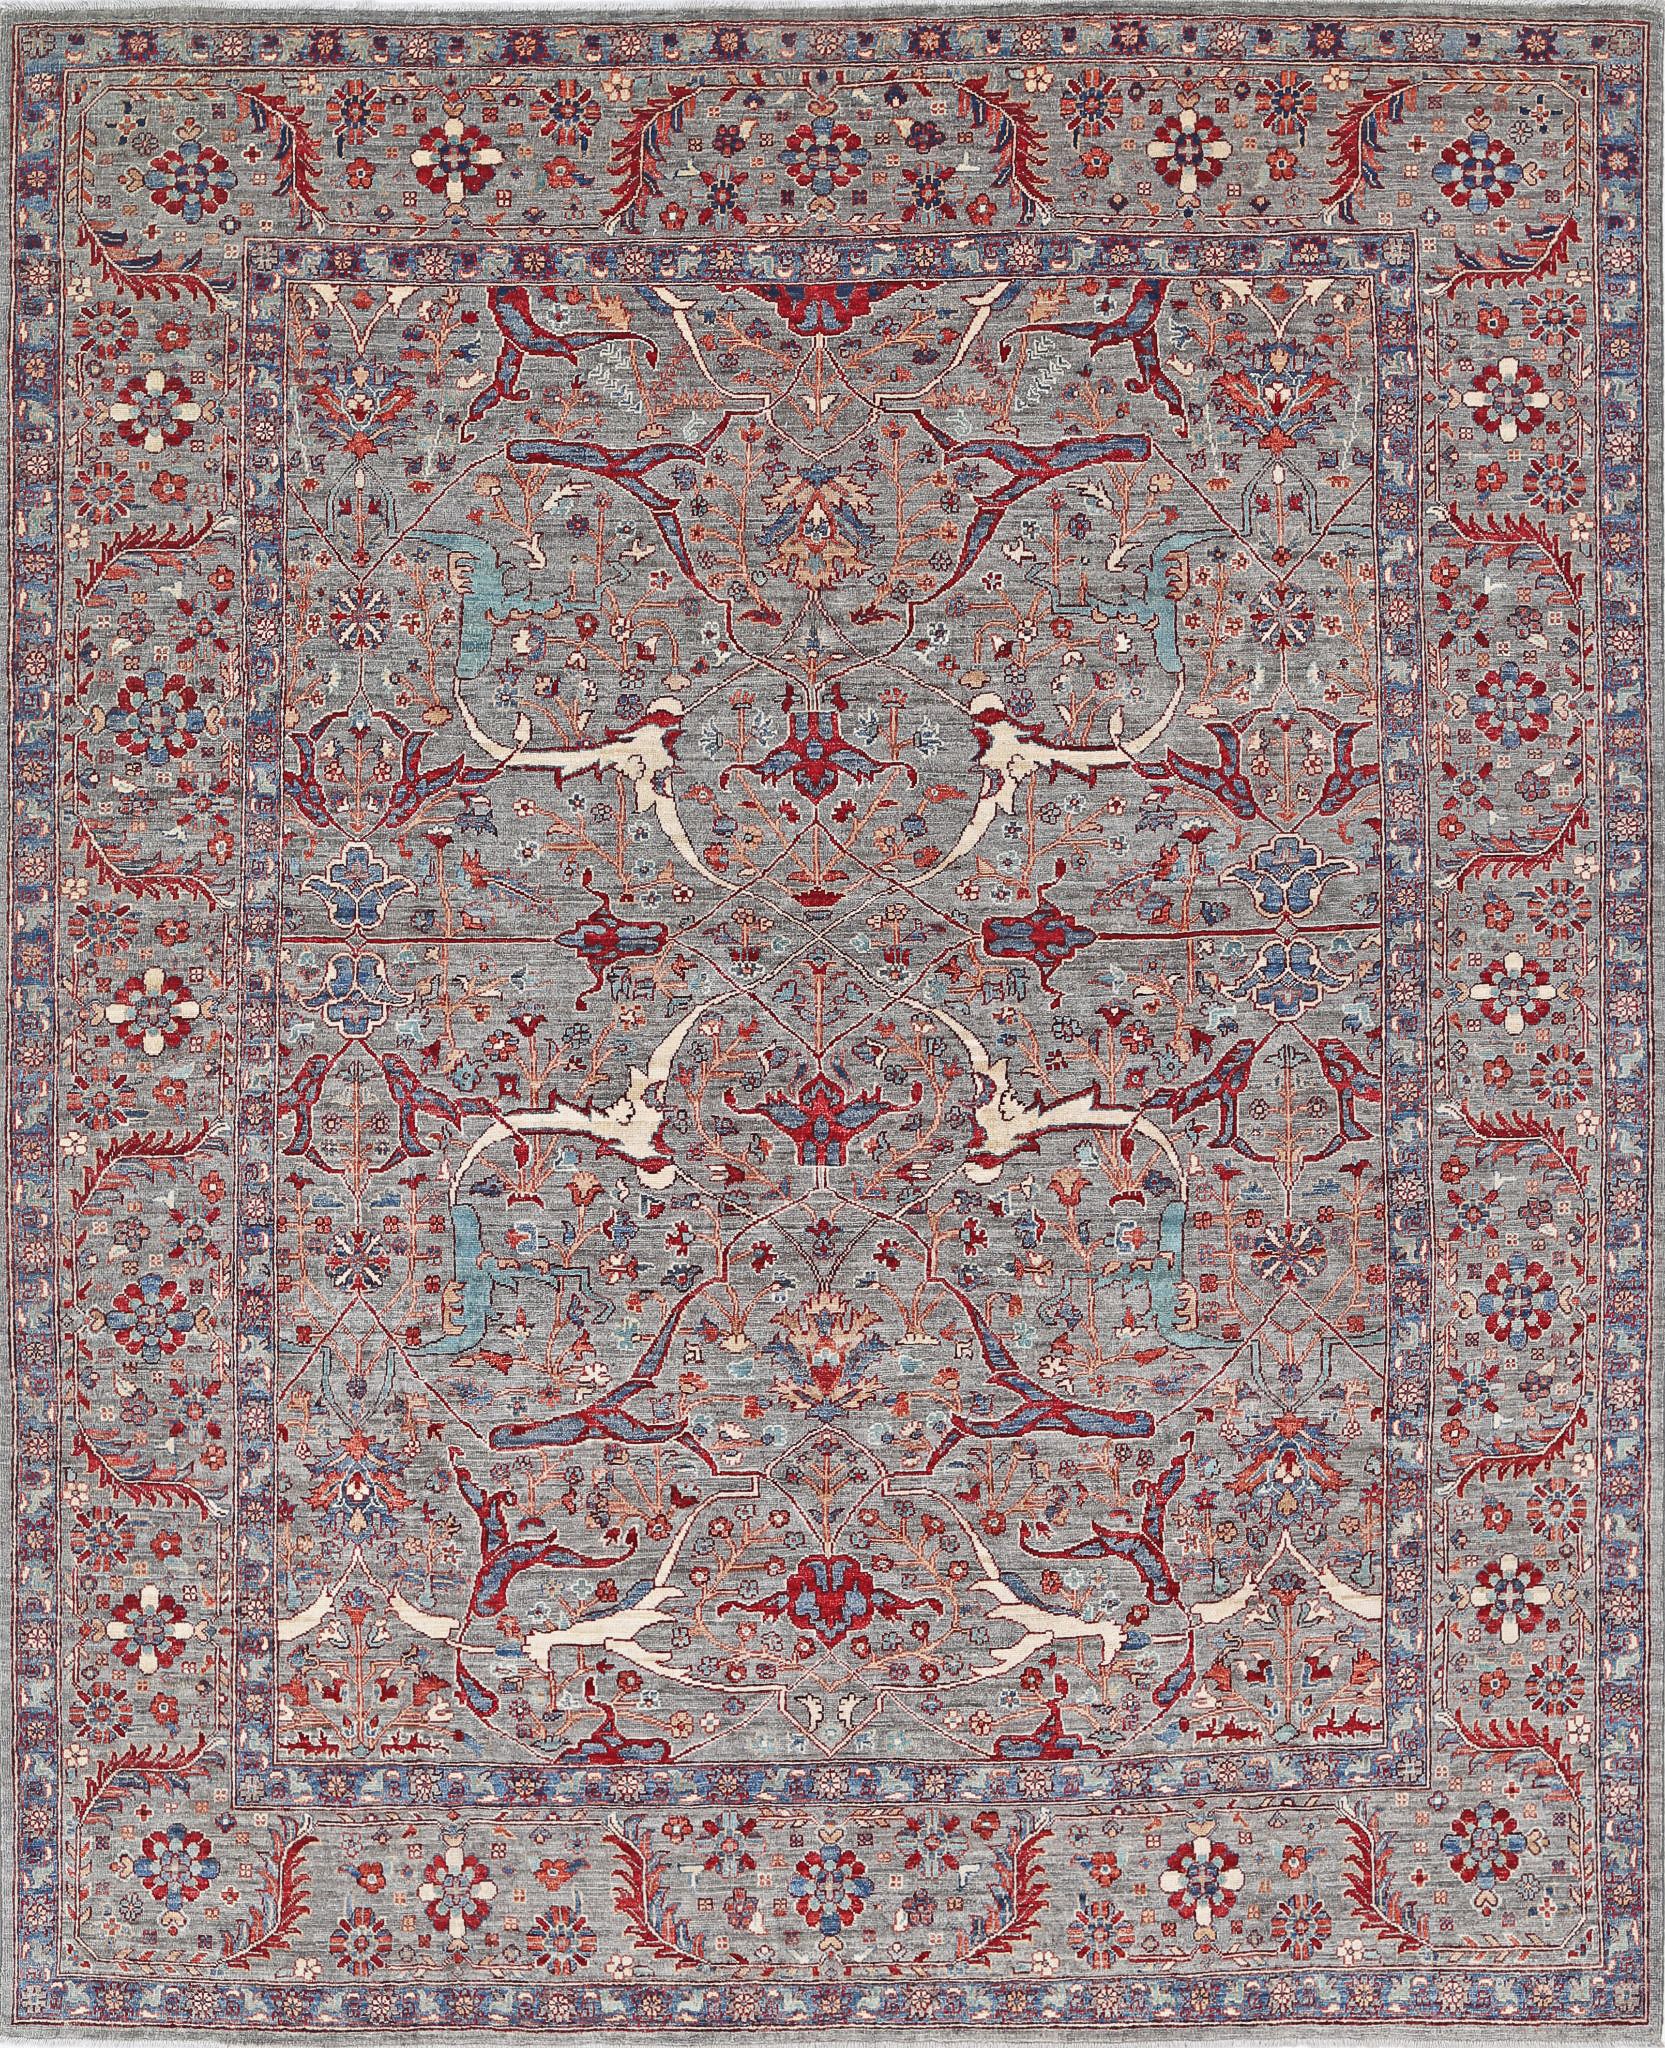 Jasmine-hand-knotted-sultani-wool-rug-5024937.jpg